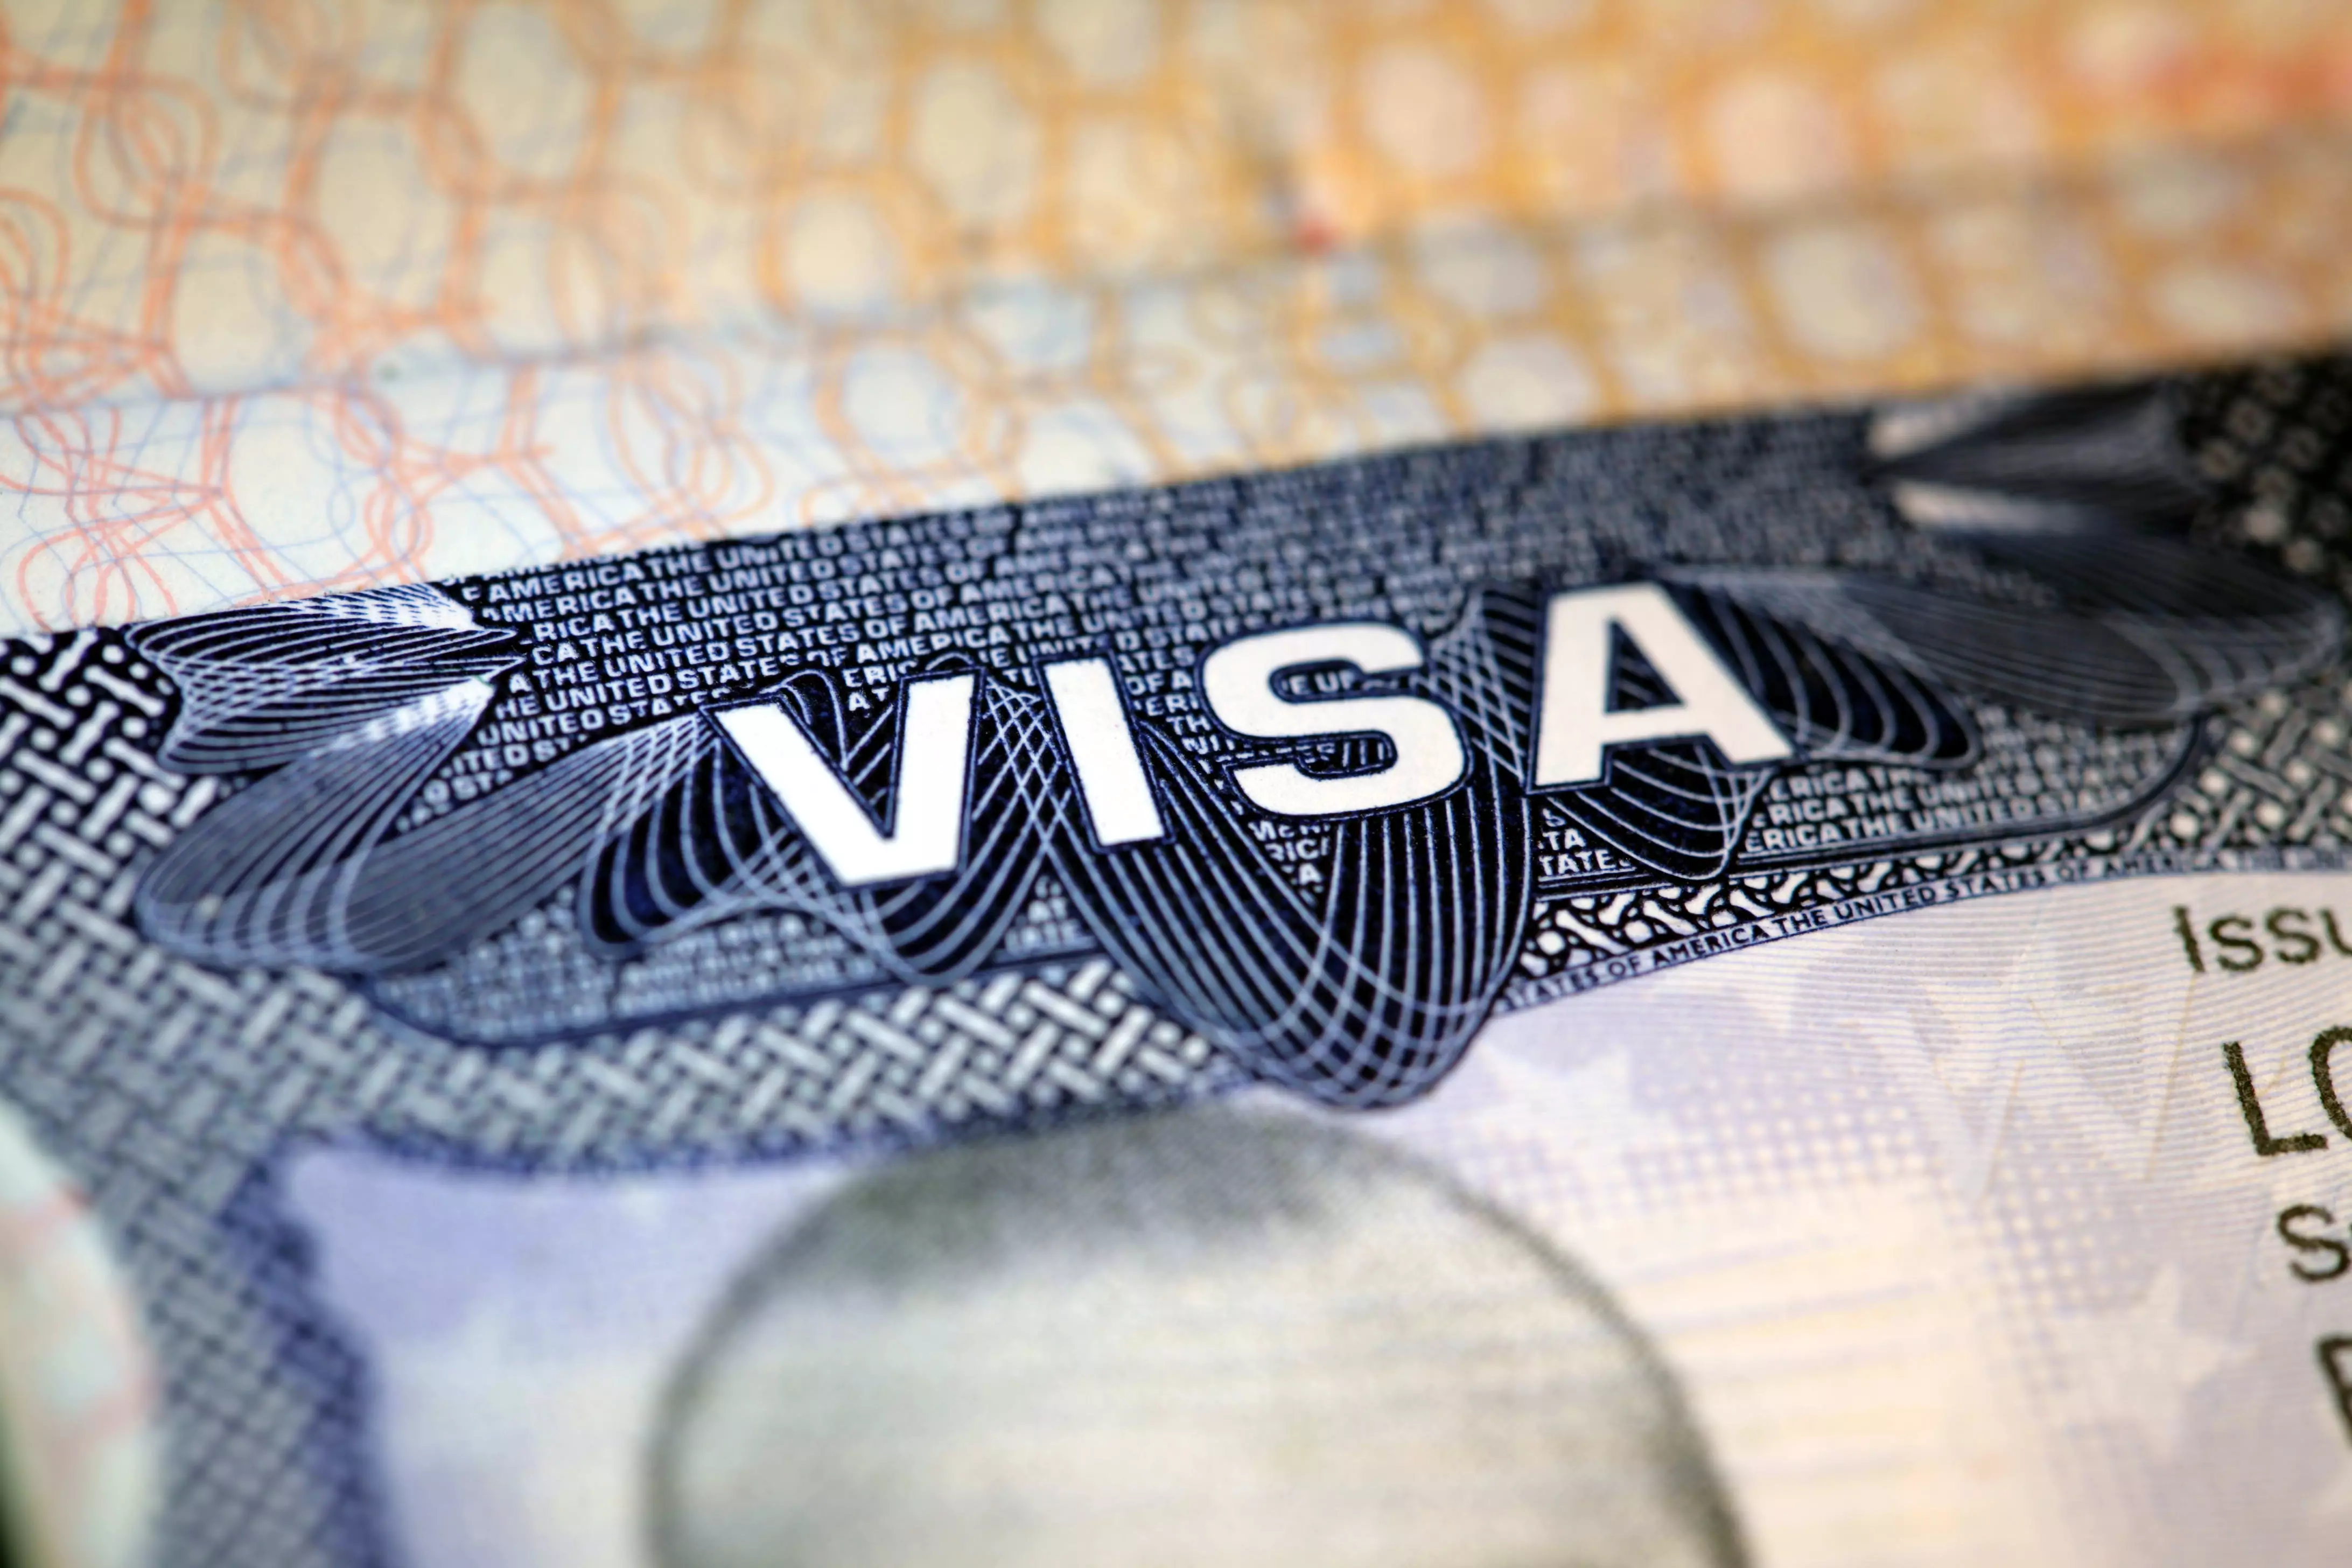 Avropa İttifaqı ABŞ-dan viza tələb edəcək - Bu tarixdən